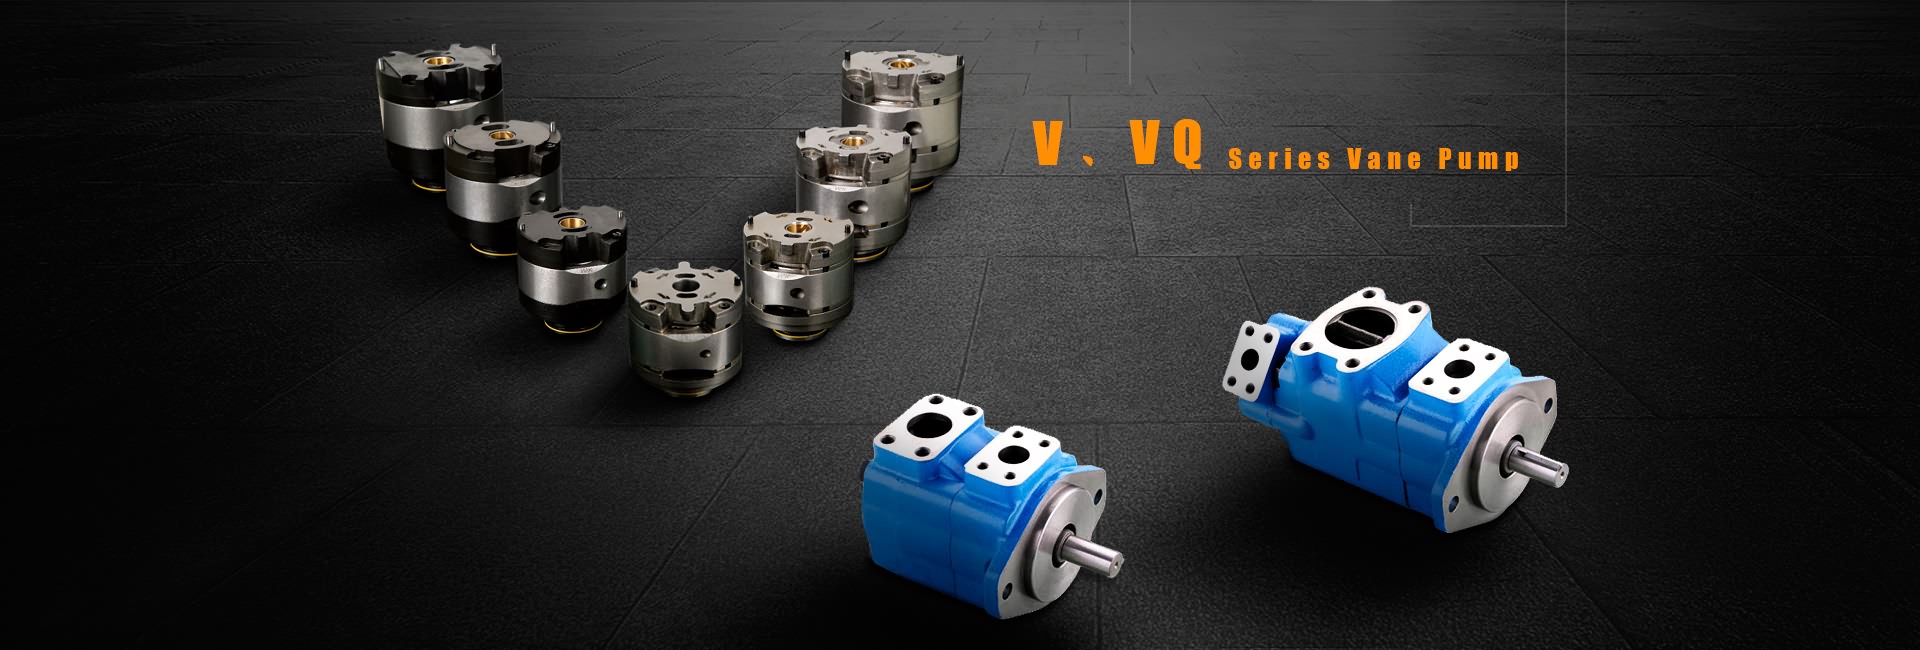 V,VQ Serisi Kanatlı Pompa